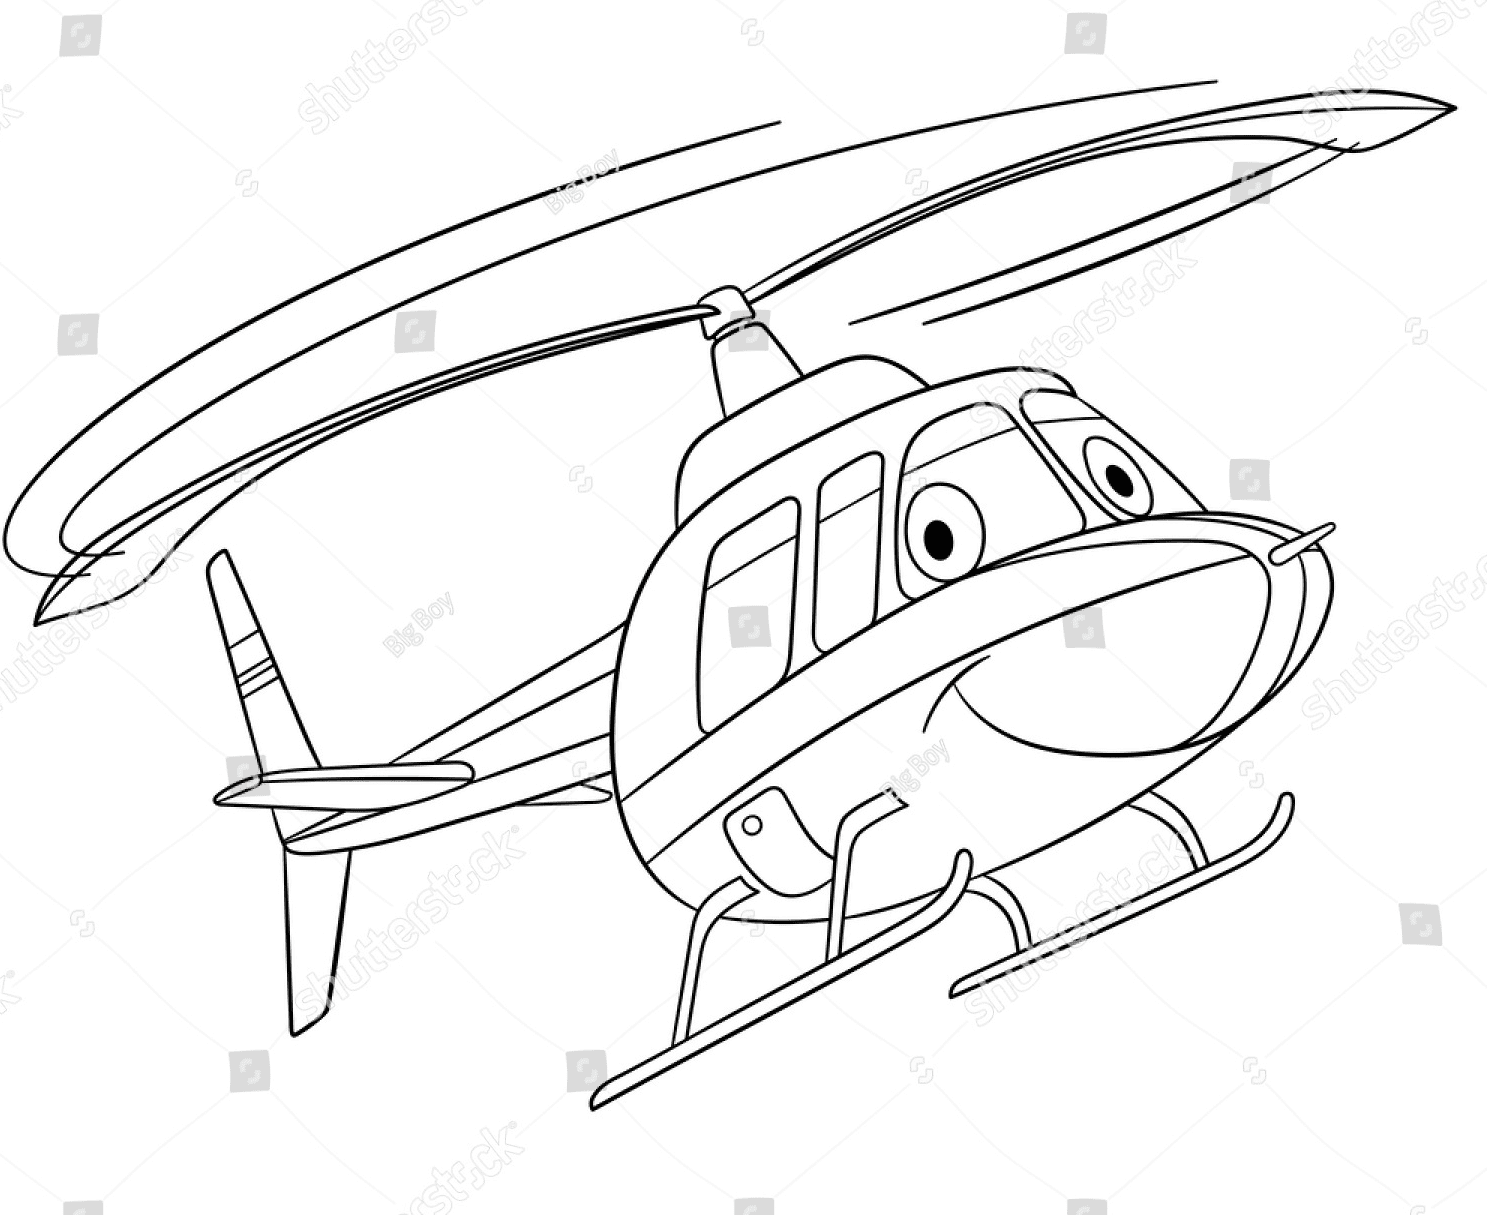 Cartoon-Hubschrauber fliegt vom Hubschrauber aus